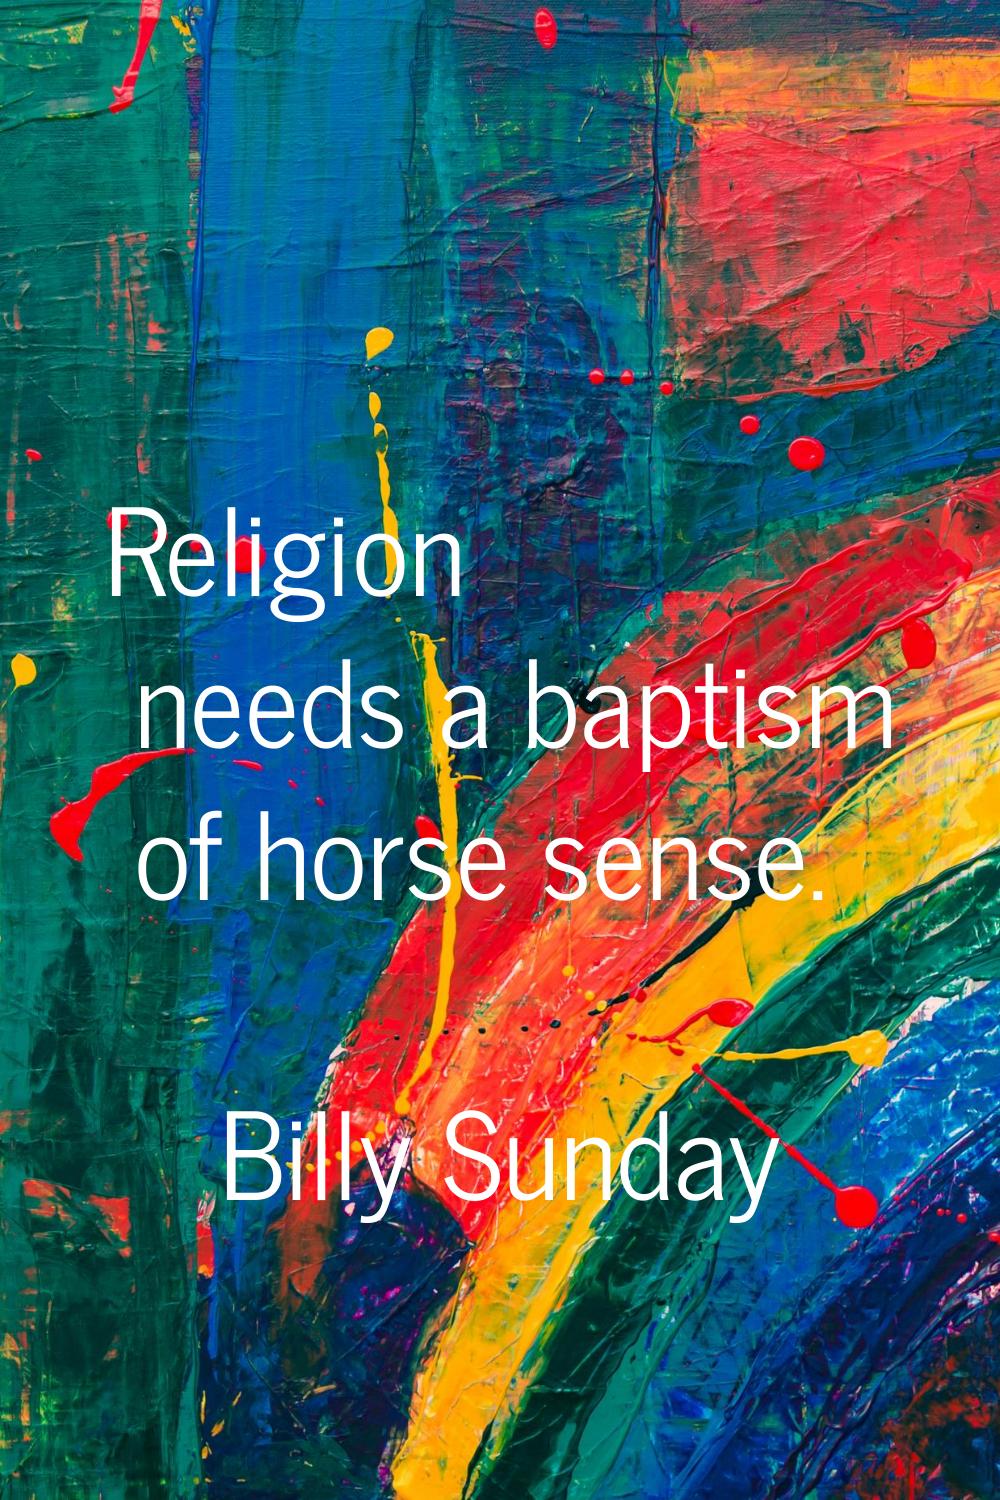 Religion needs a baptism of horse sense.